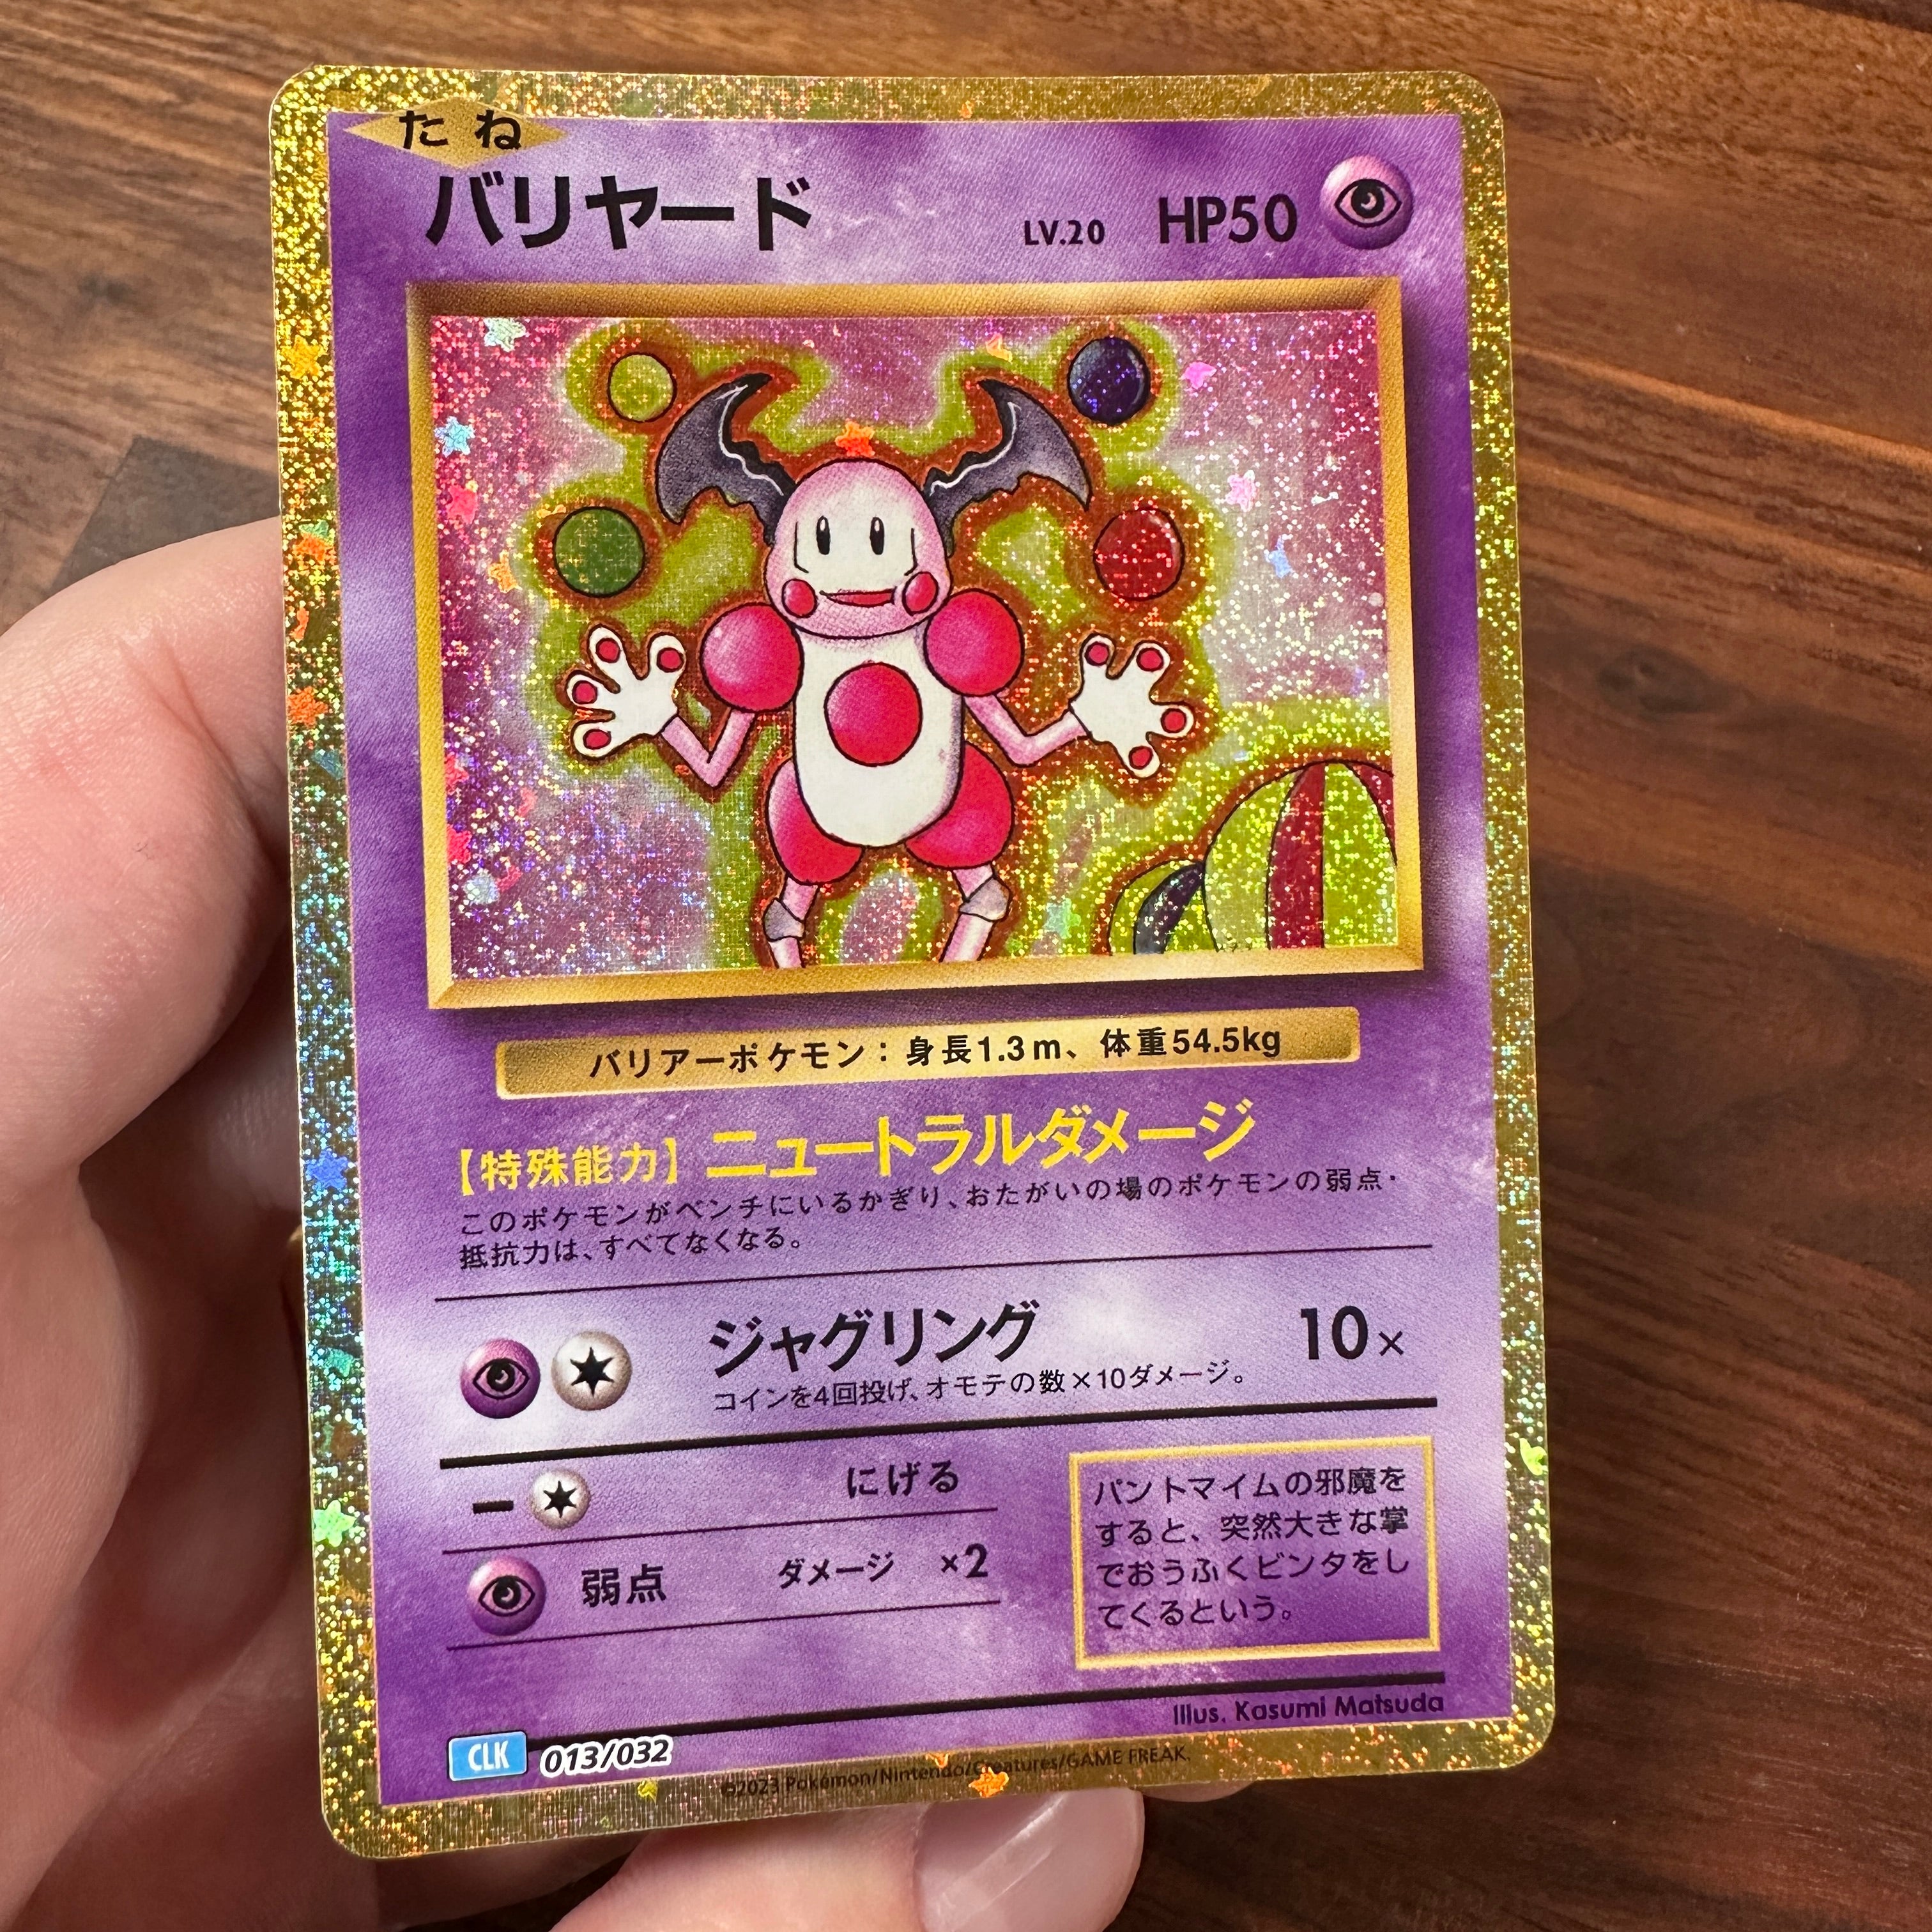 Pokémon Card Game Scarlet & Violet ｢Pokémon Card Game Classic｣  Pokémon Card Game CLK 013/032  Mr. Mime